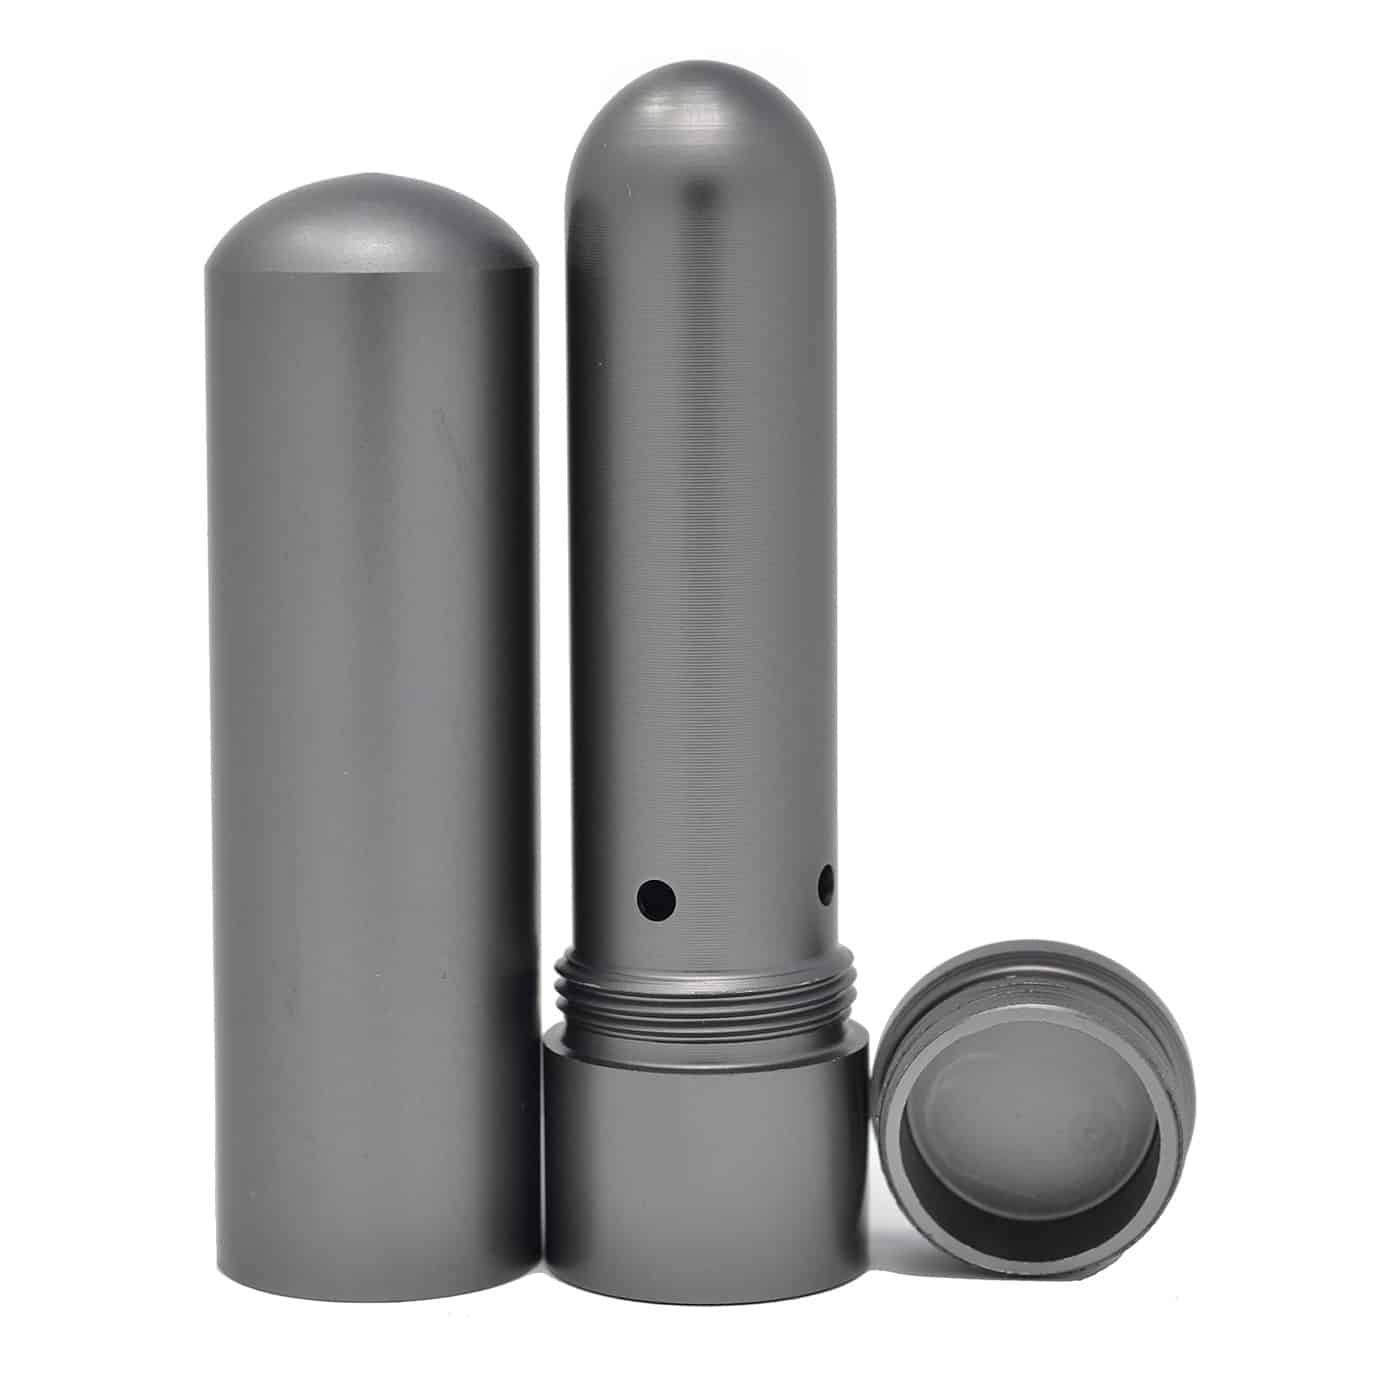 Refillable Aluminum Essential Oil Personal Inhaler